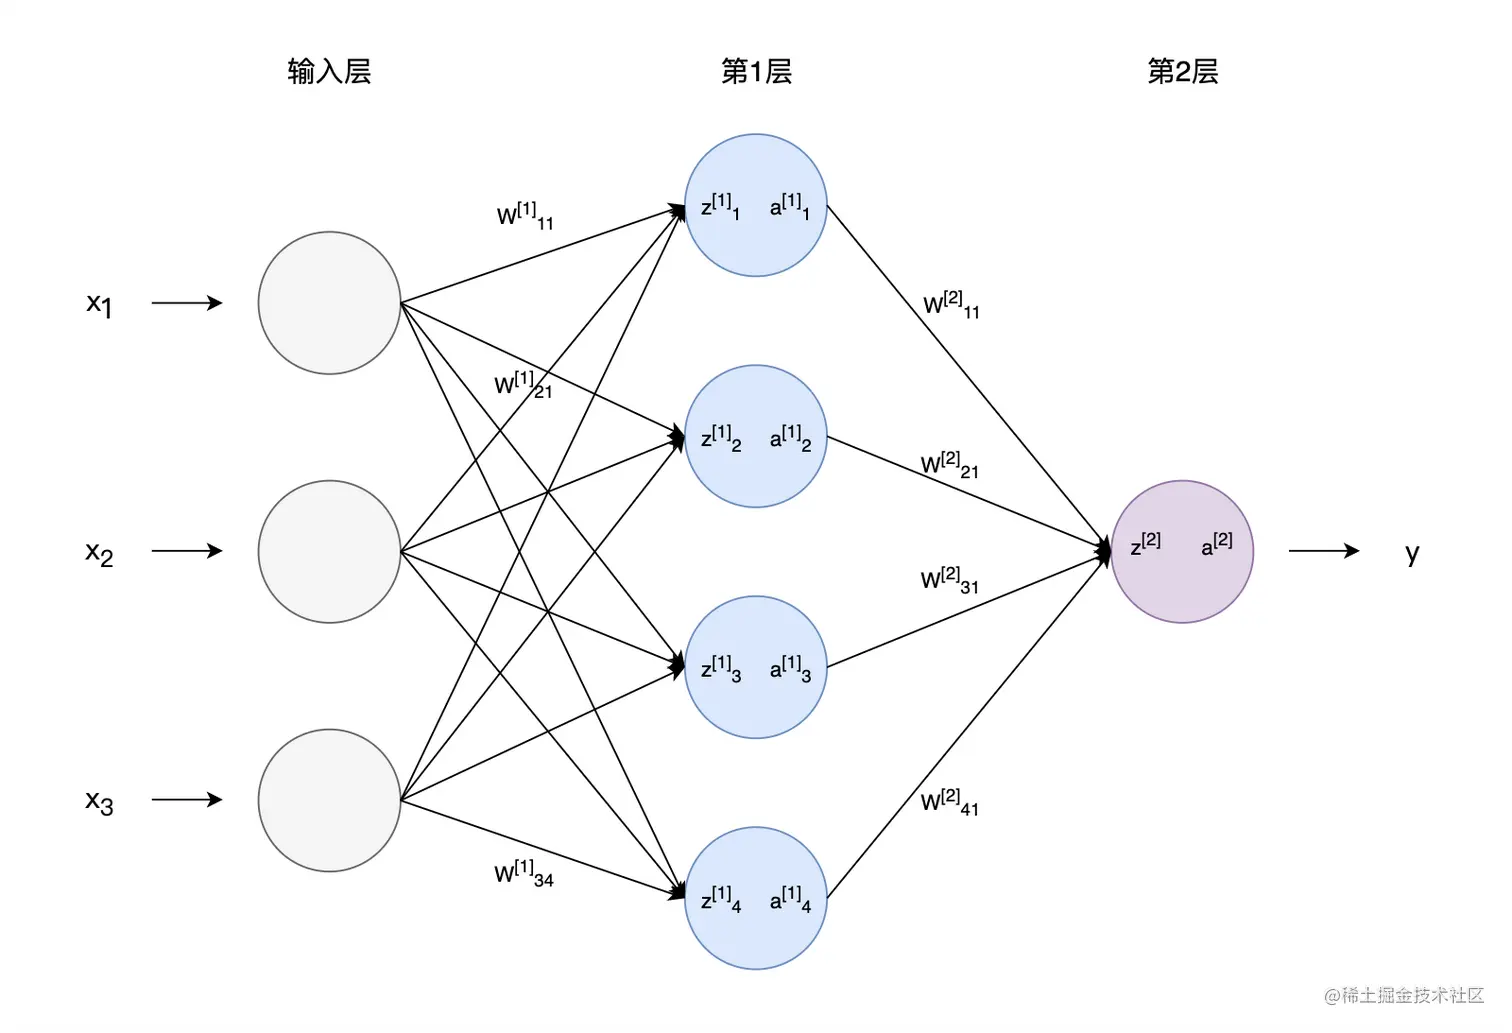 图4 神经网络中各参数符号表示